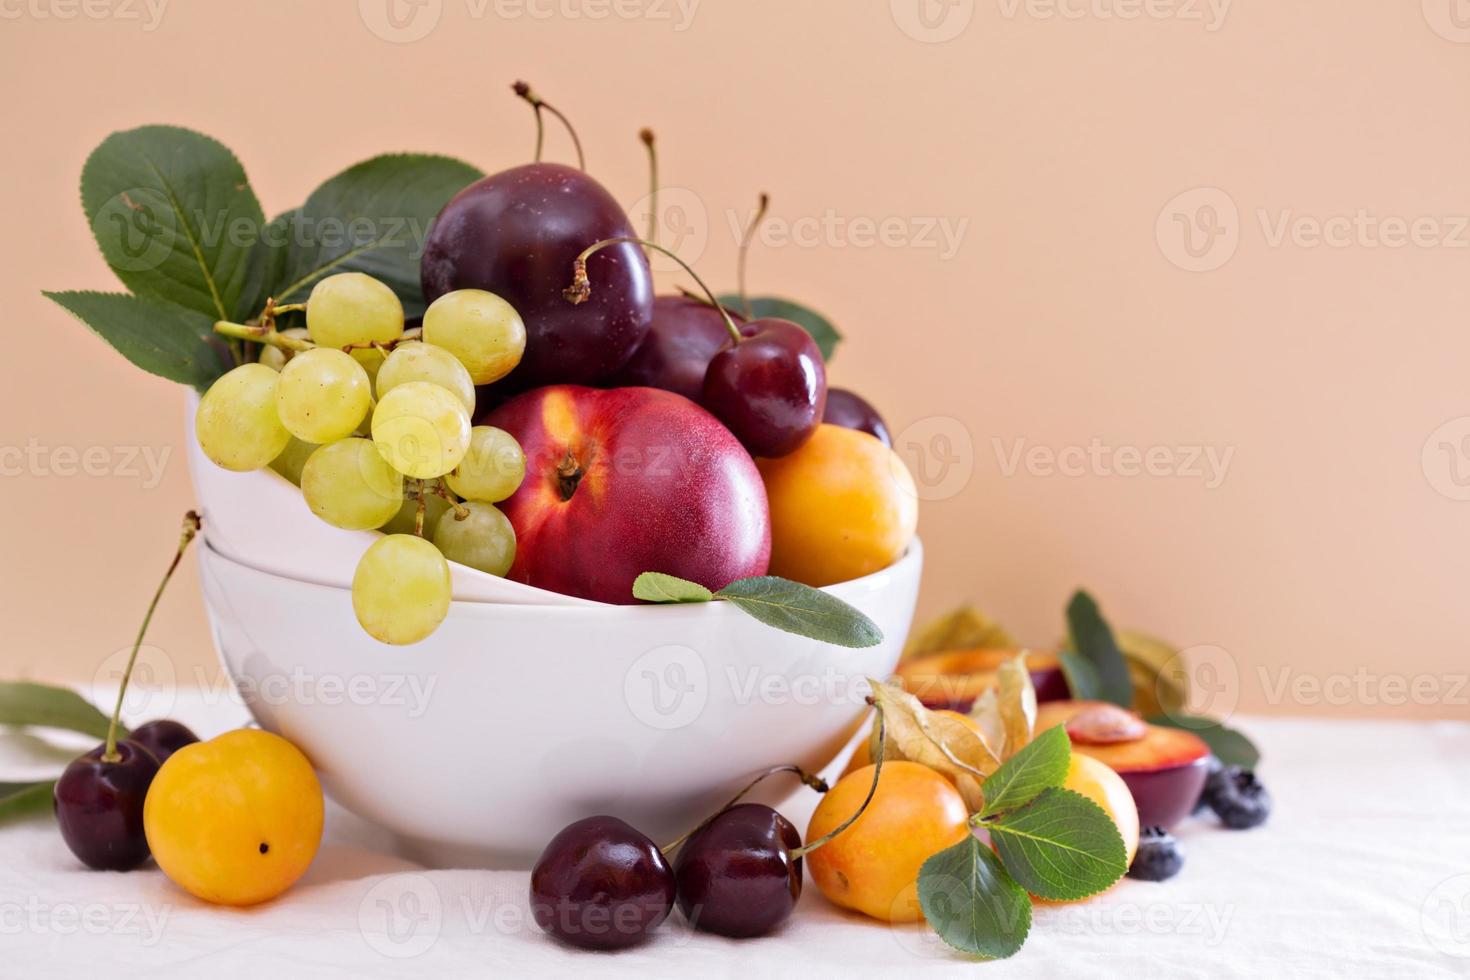 frutas de hueso frescas en un tazón blanco foto